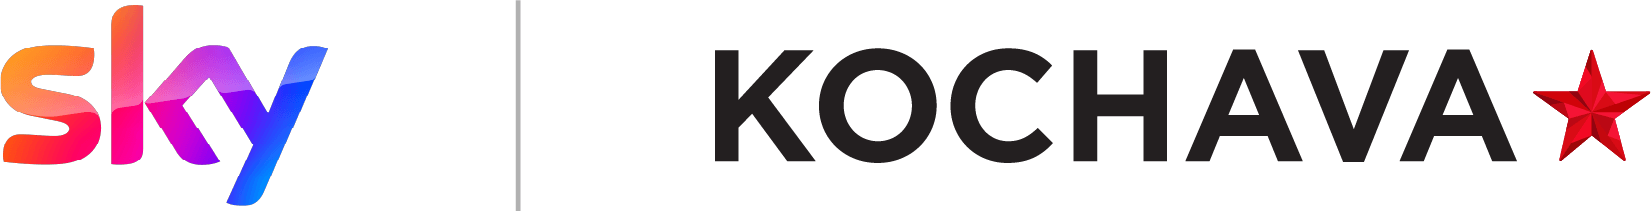 Sky and Kochava logos